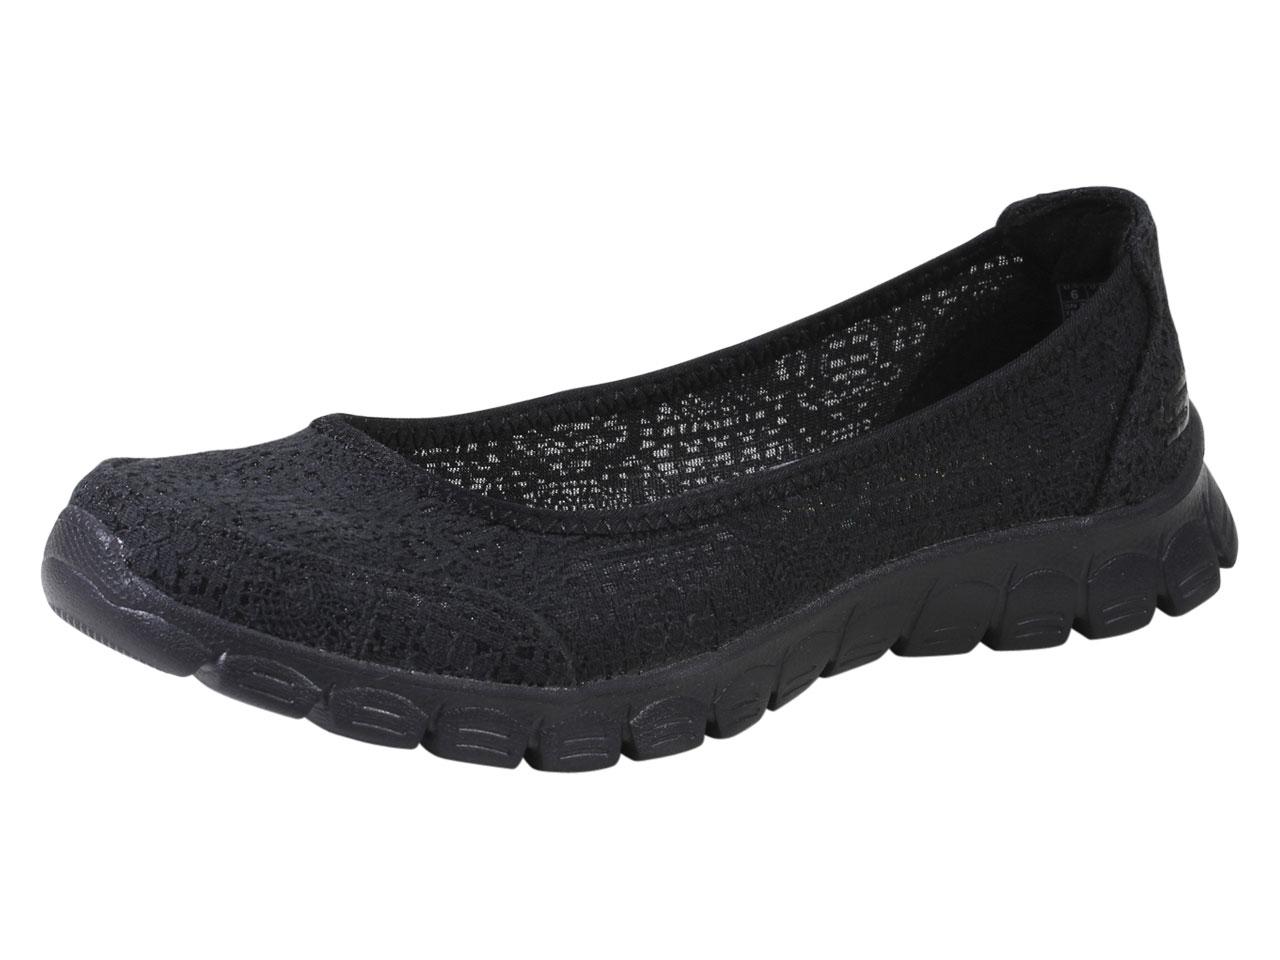 Skechers Women's EZ Flex 3.0 Beautify Memory Foam Loafers Shoes - Black - 7.5 B(M) US